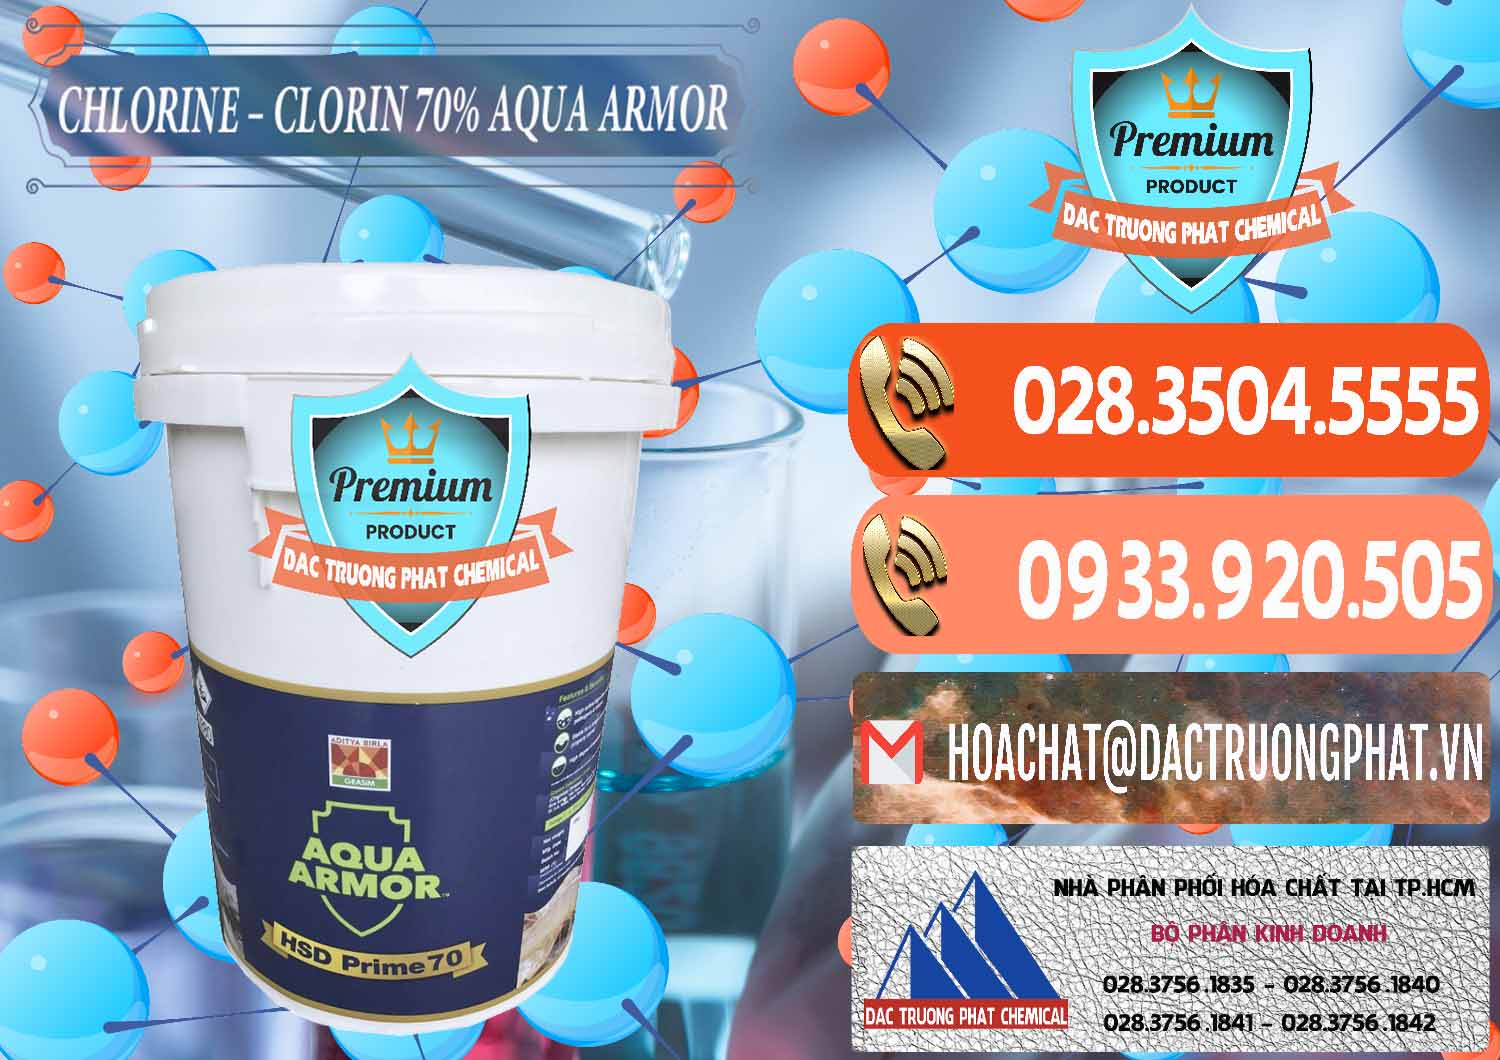 Đơn vị chuyên bán _ phân phối Chlorine – Clorin 70% Aqua Armor Aditya Birla Grasim Ấn Độ India - 0241 - Chuyên cung cấp ( phân phối ) hóa chất tại TP.HCM - hoachatmientay.com